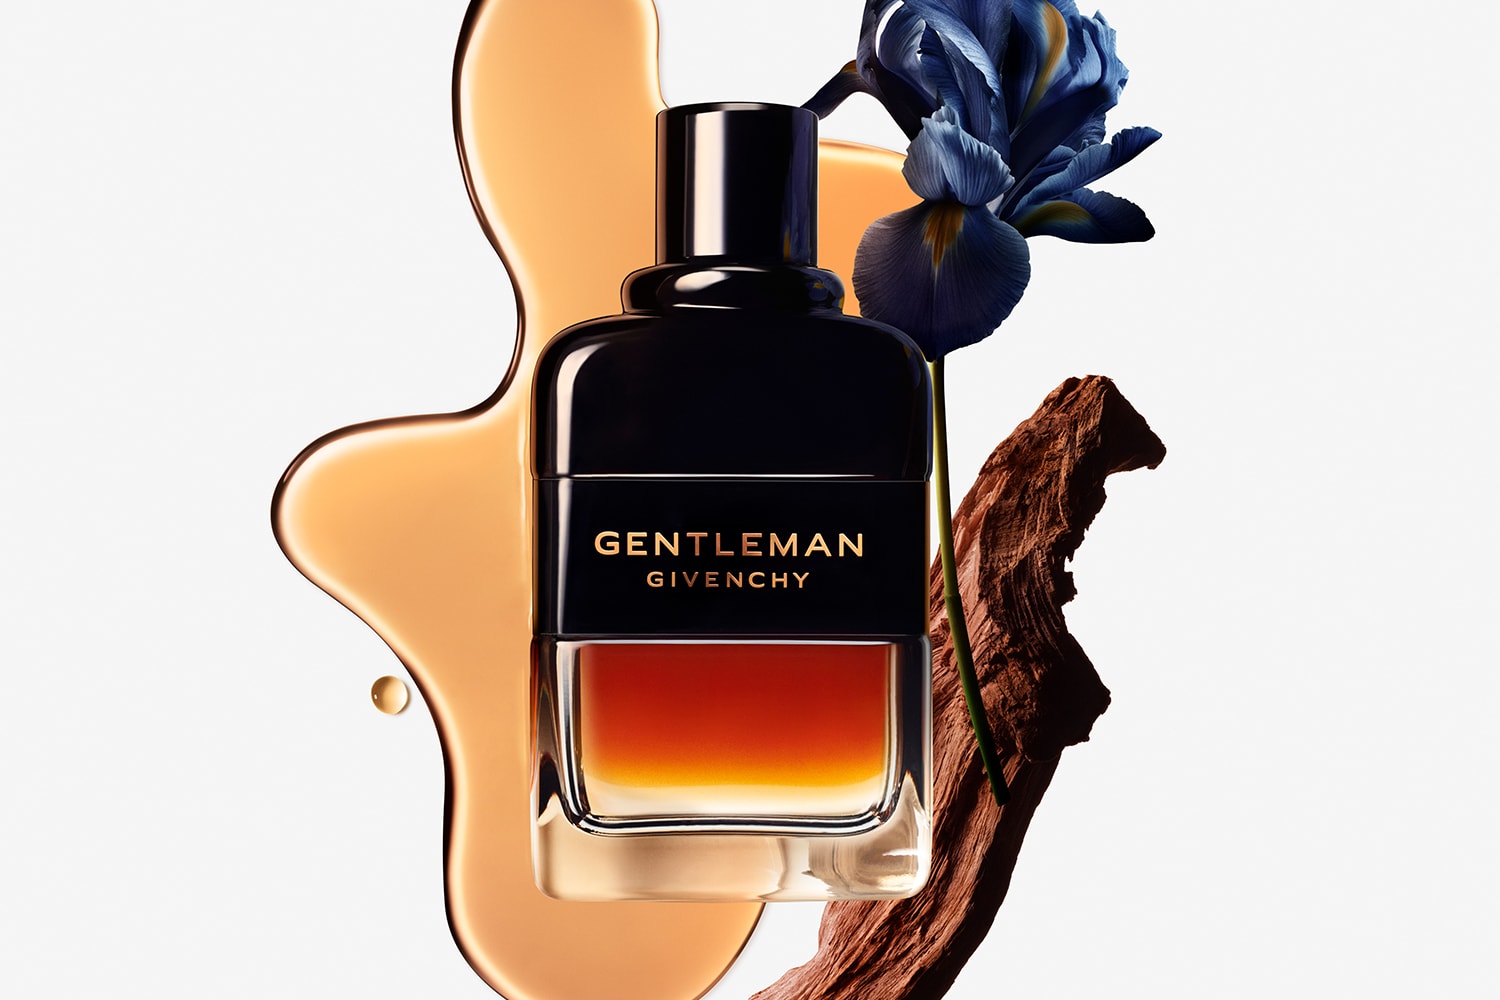 Gentleman Eau de Parfum Boisée Givenchy cologne - a fragrance for